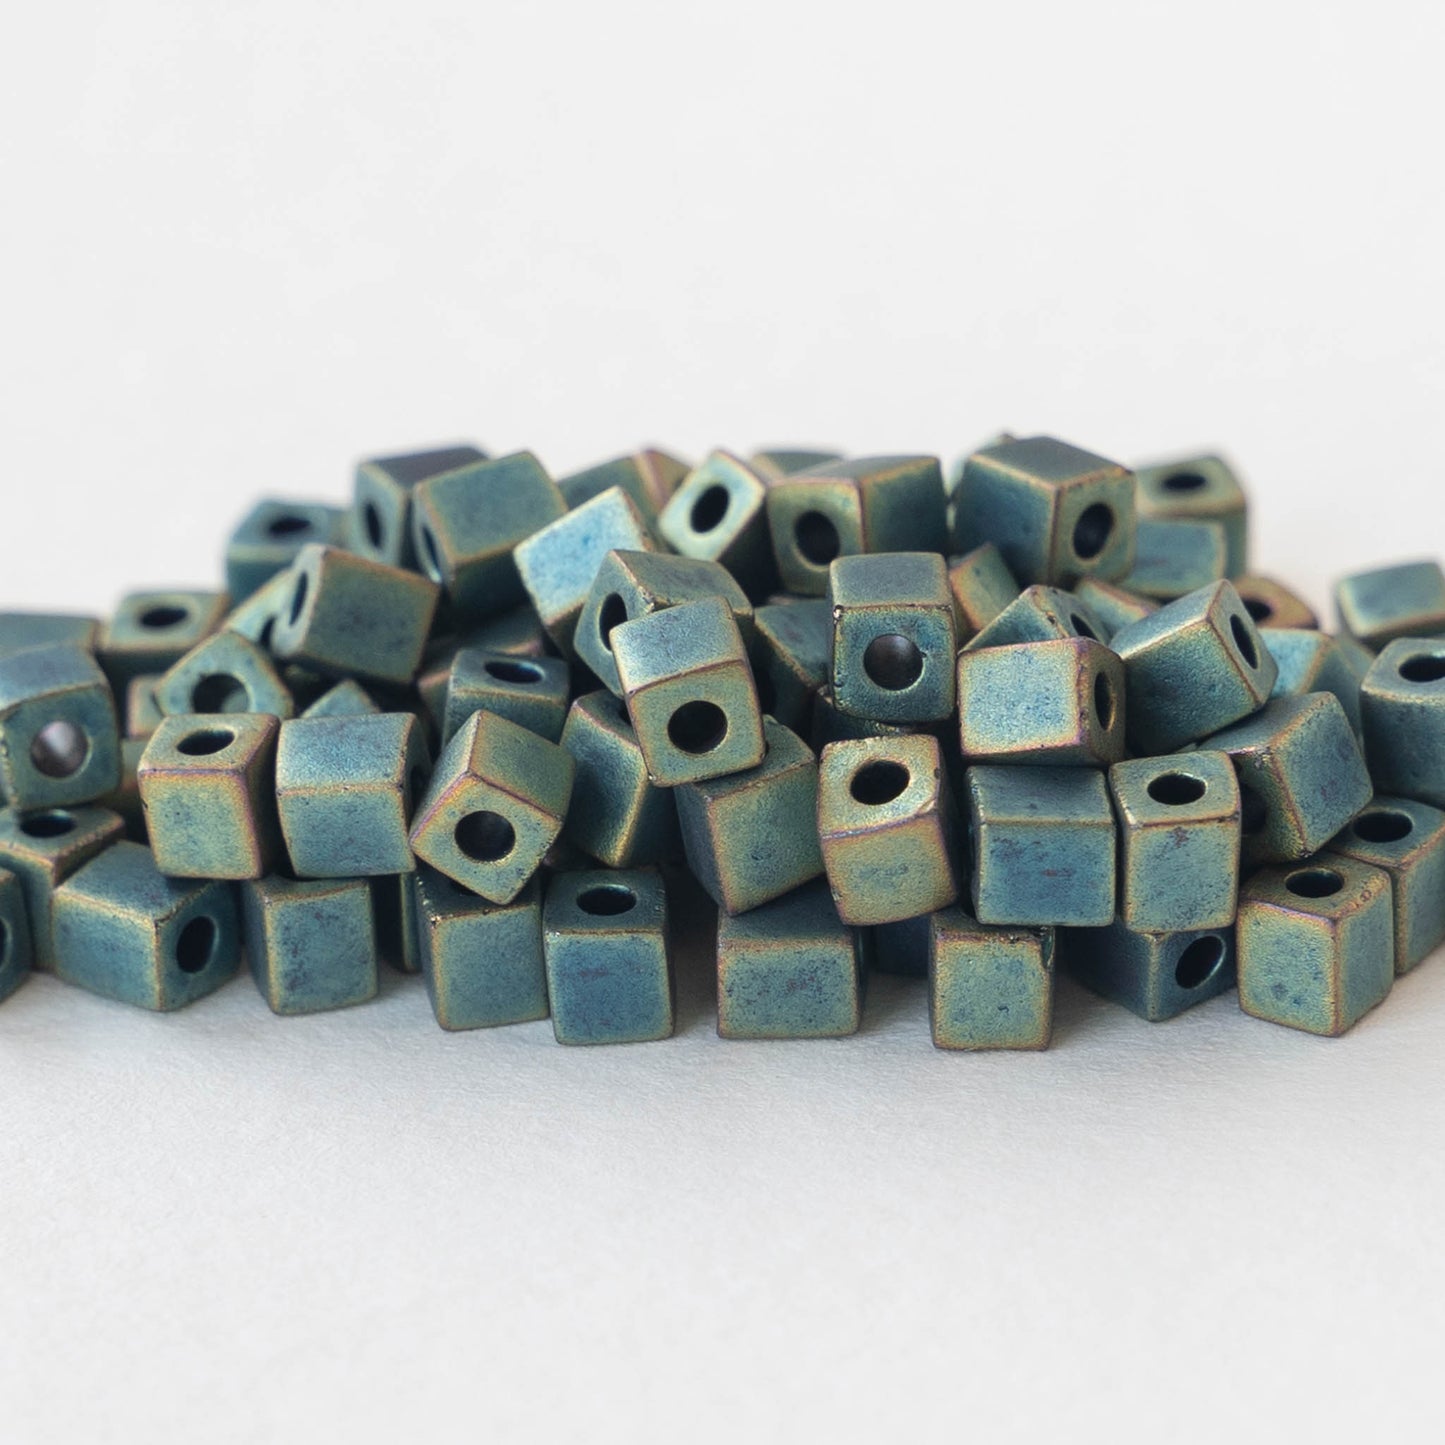 4mm Miyuki Cube Beads - Metallic Matte Verde Gris - 20 grams